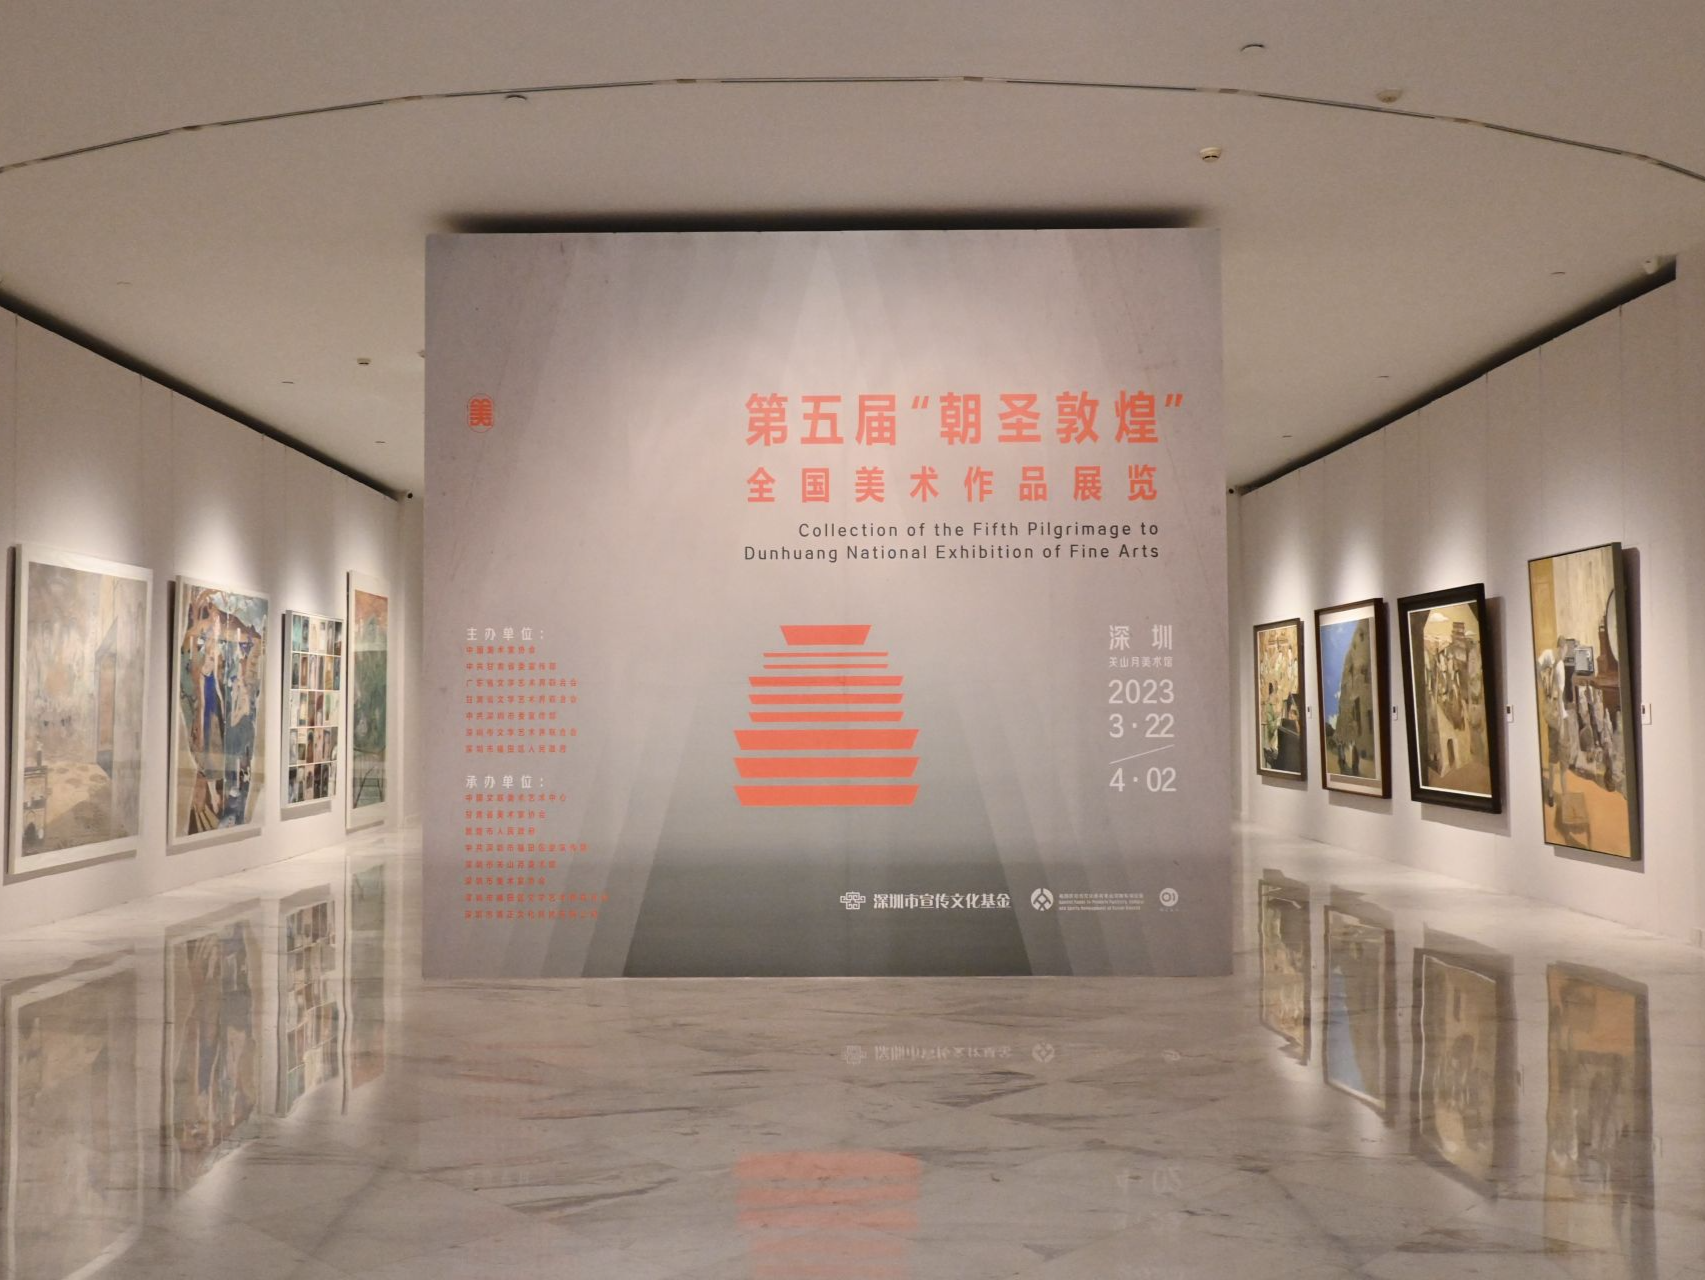 第五届“朝圣敦煌”全国美术作品展览在深圳开幕  推动文化交流融合 促进高质量发展